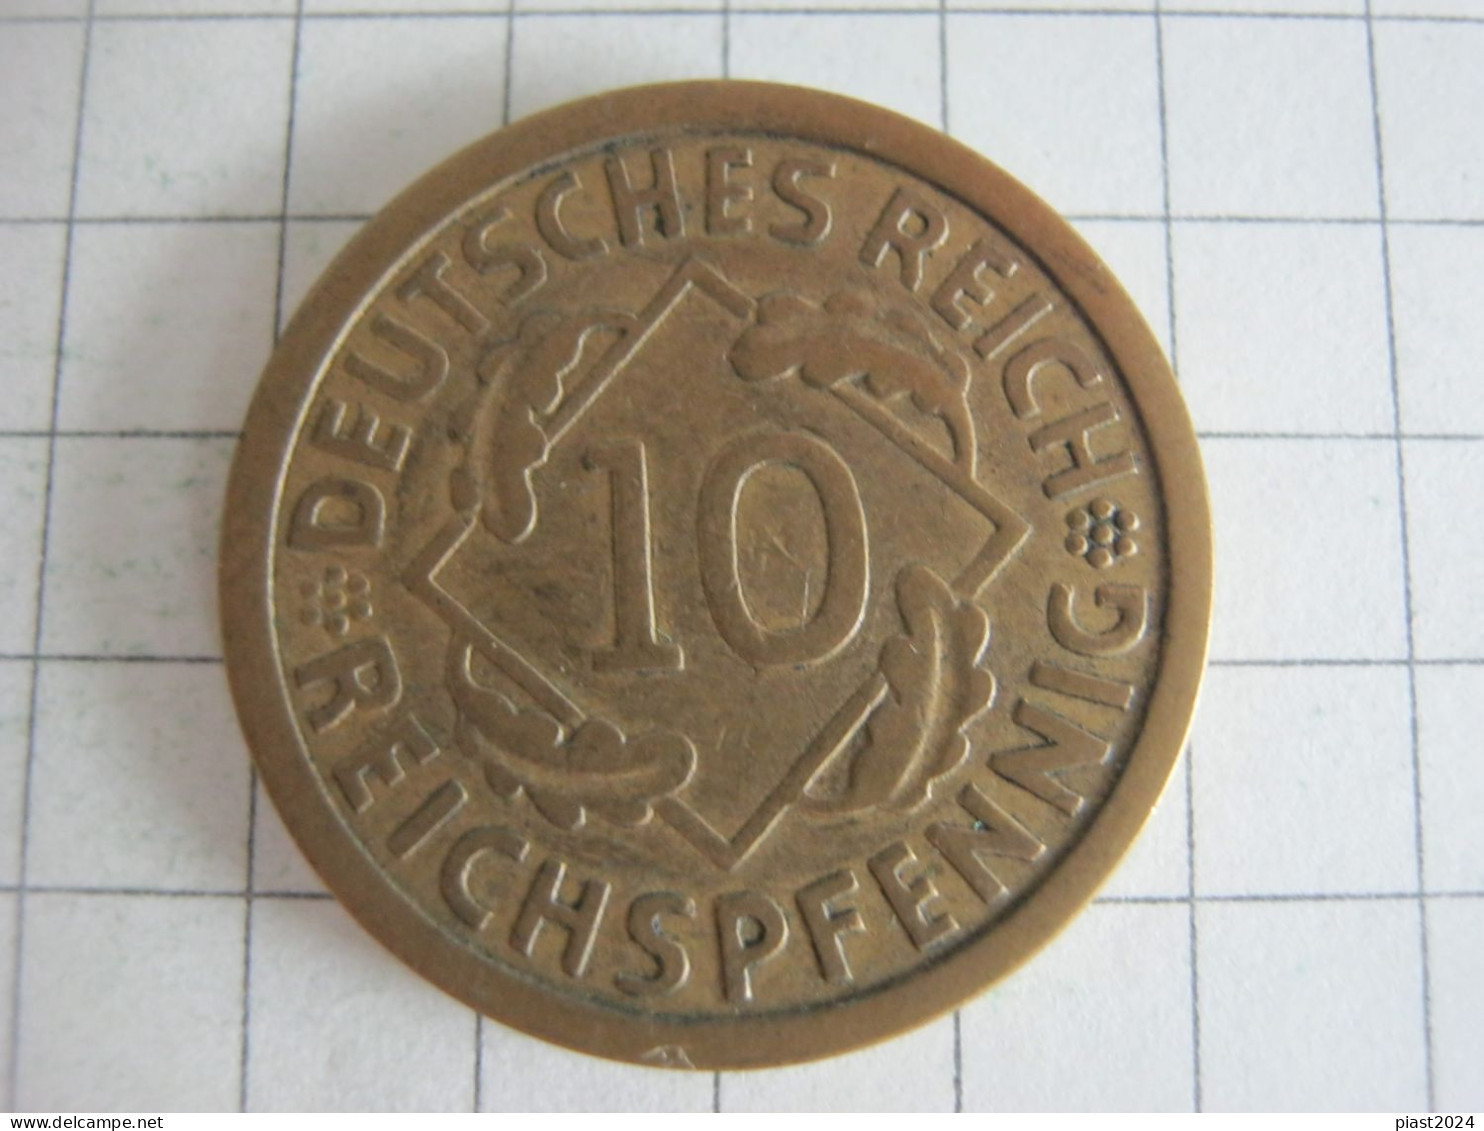 Germany 10 Reichspfennig 1924 A - 10 Rentenpfennig & 10 Reichspfennig